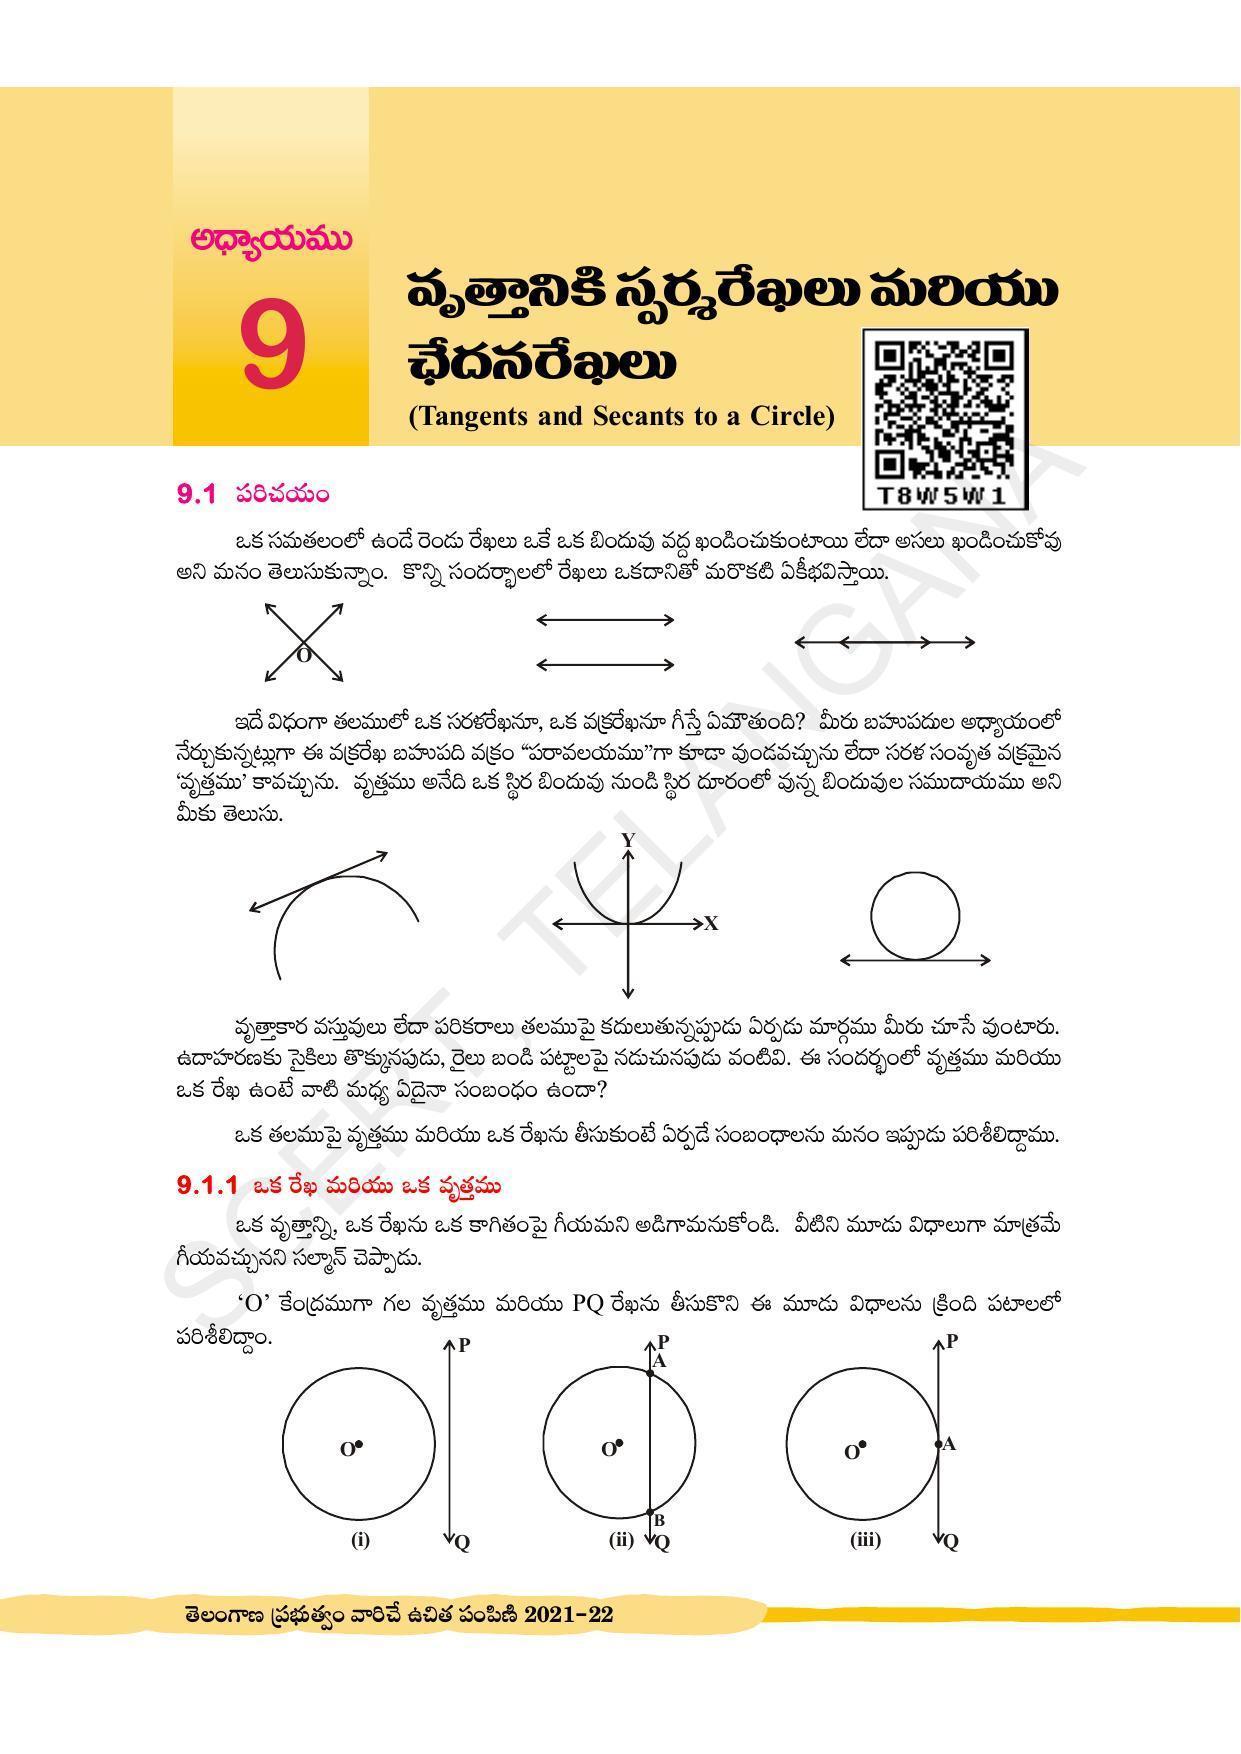 TS SCERT Class 10 Maths (Telugu Medium) Text Book - Page 239